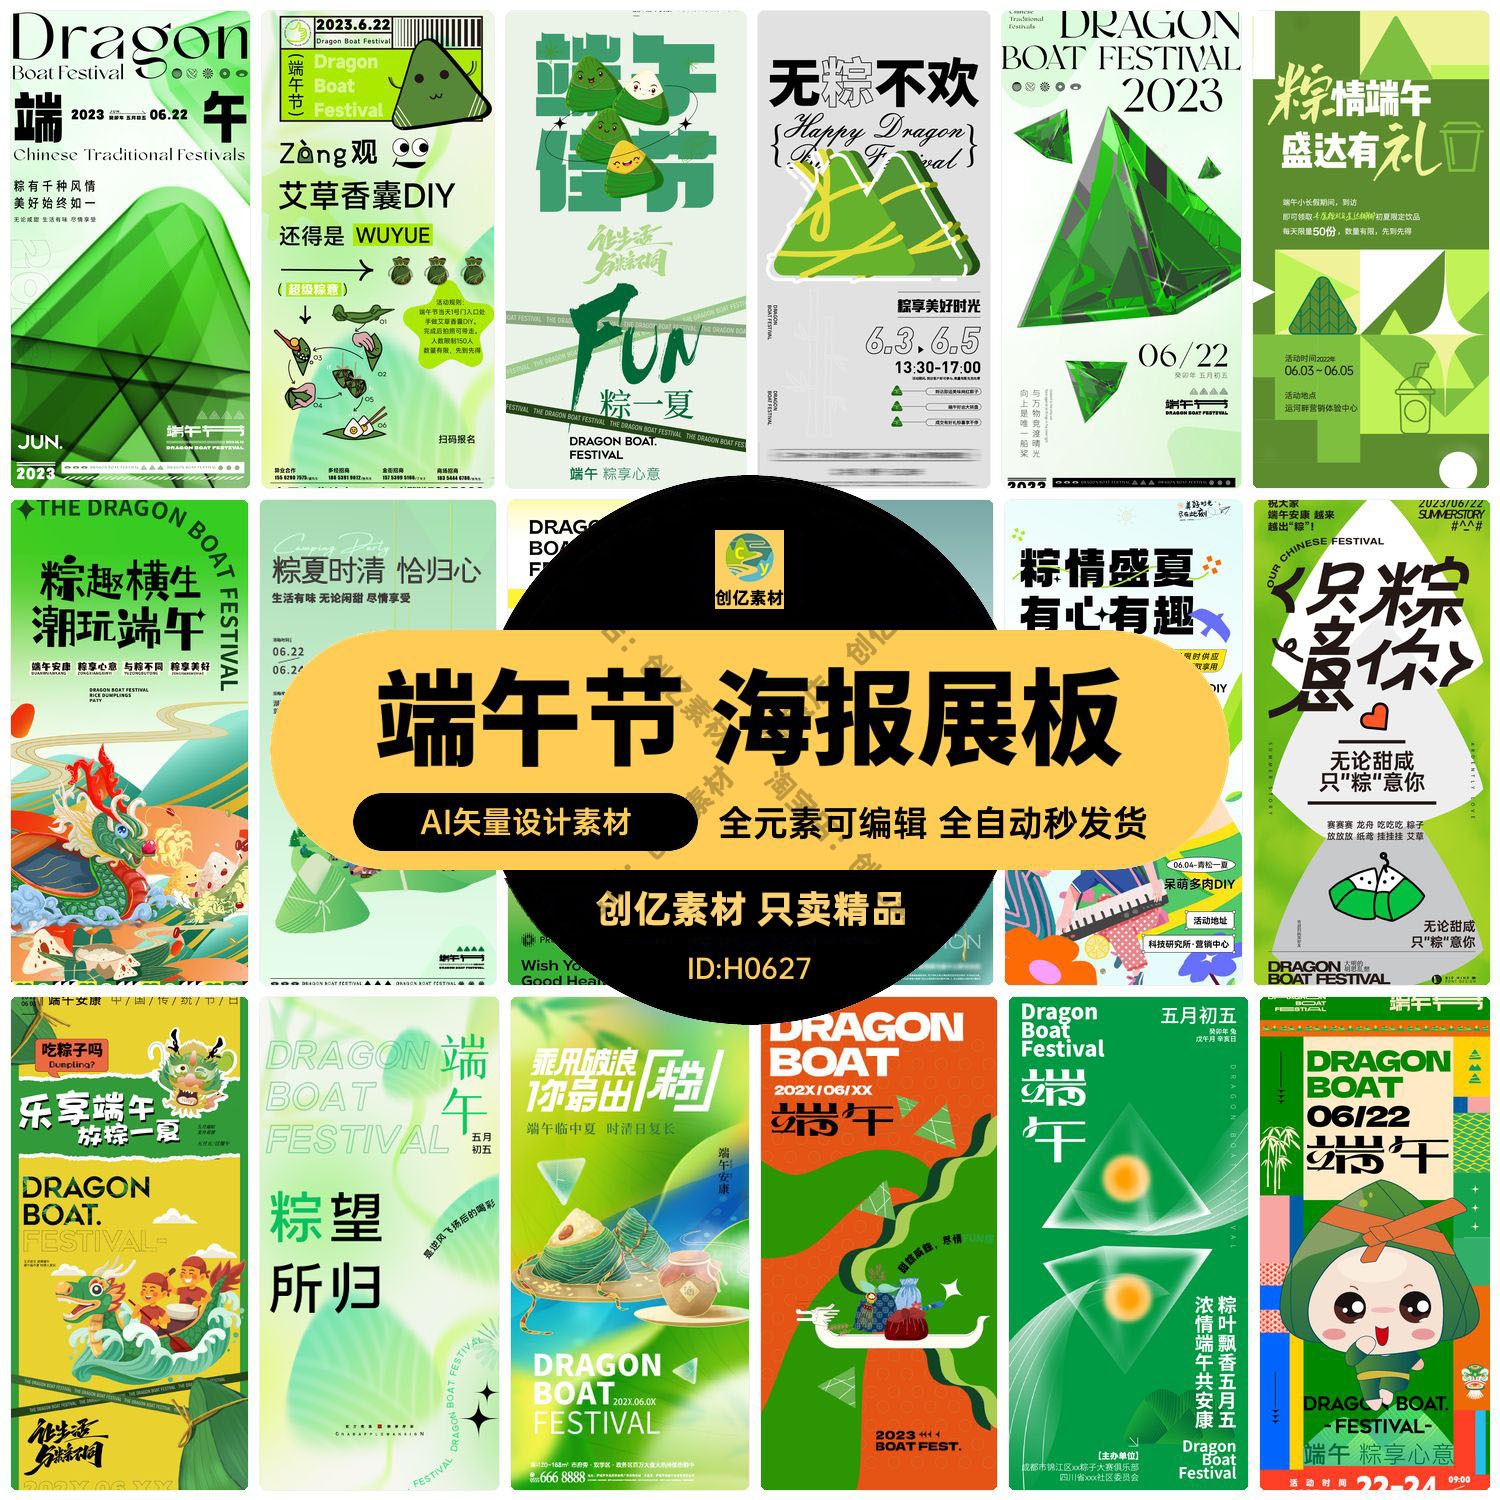 五月初五端午节赛龙舟吃粽子节日活动宣传海报展板ai矢量设计素材